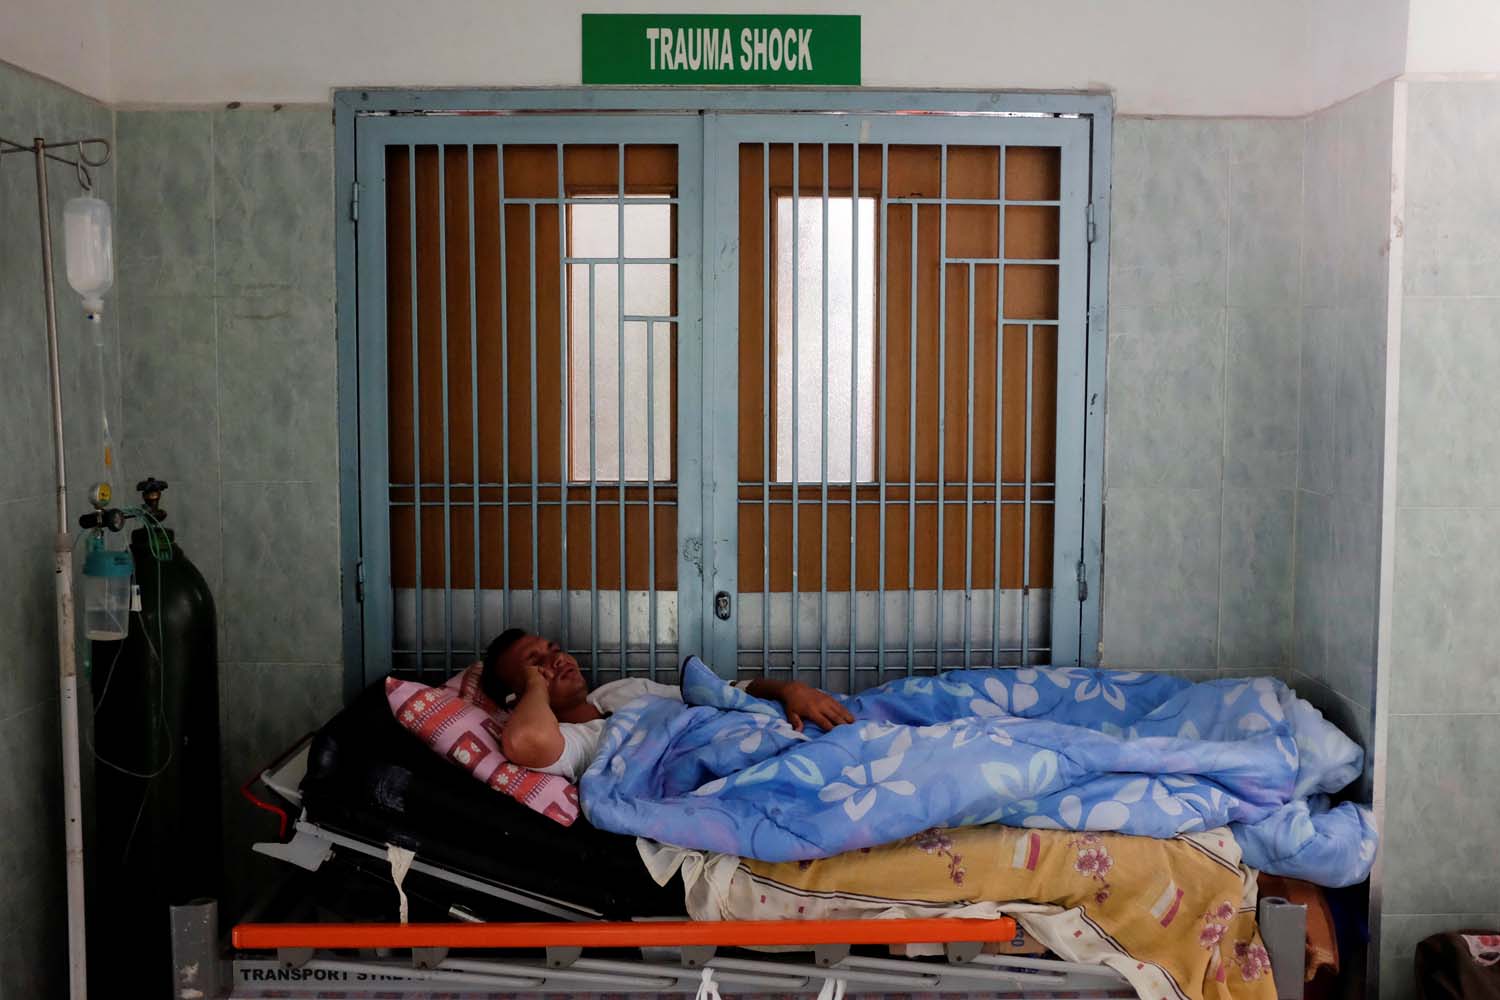 Organización Internacional de médicos alarmada por crisis de salud en Venezuela